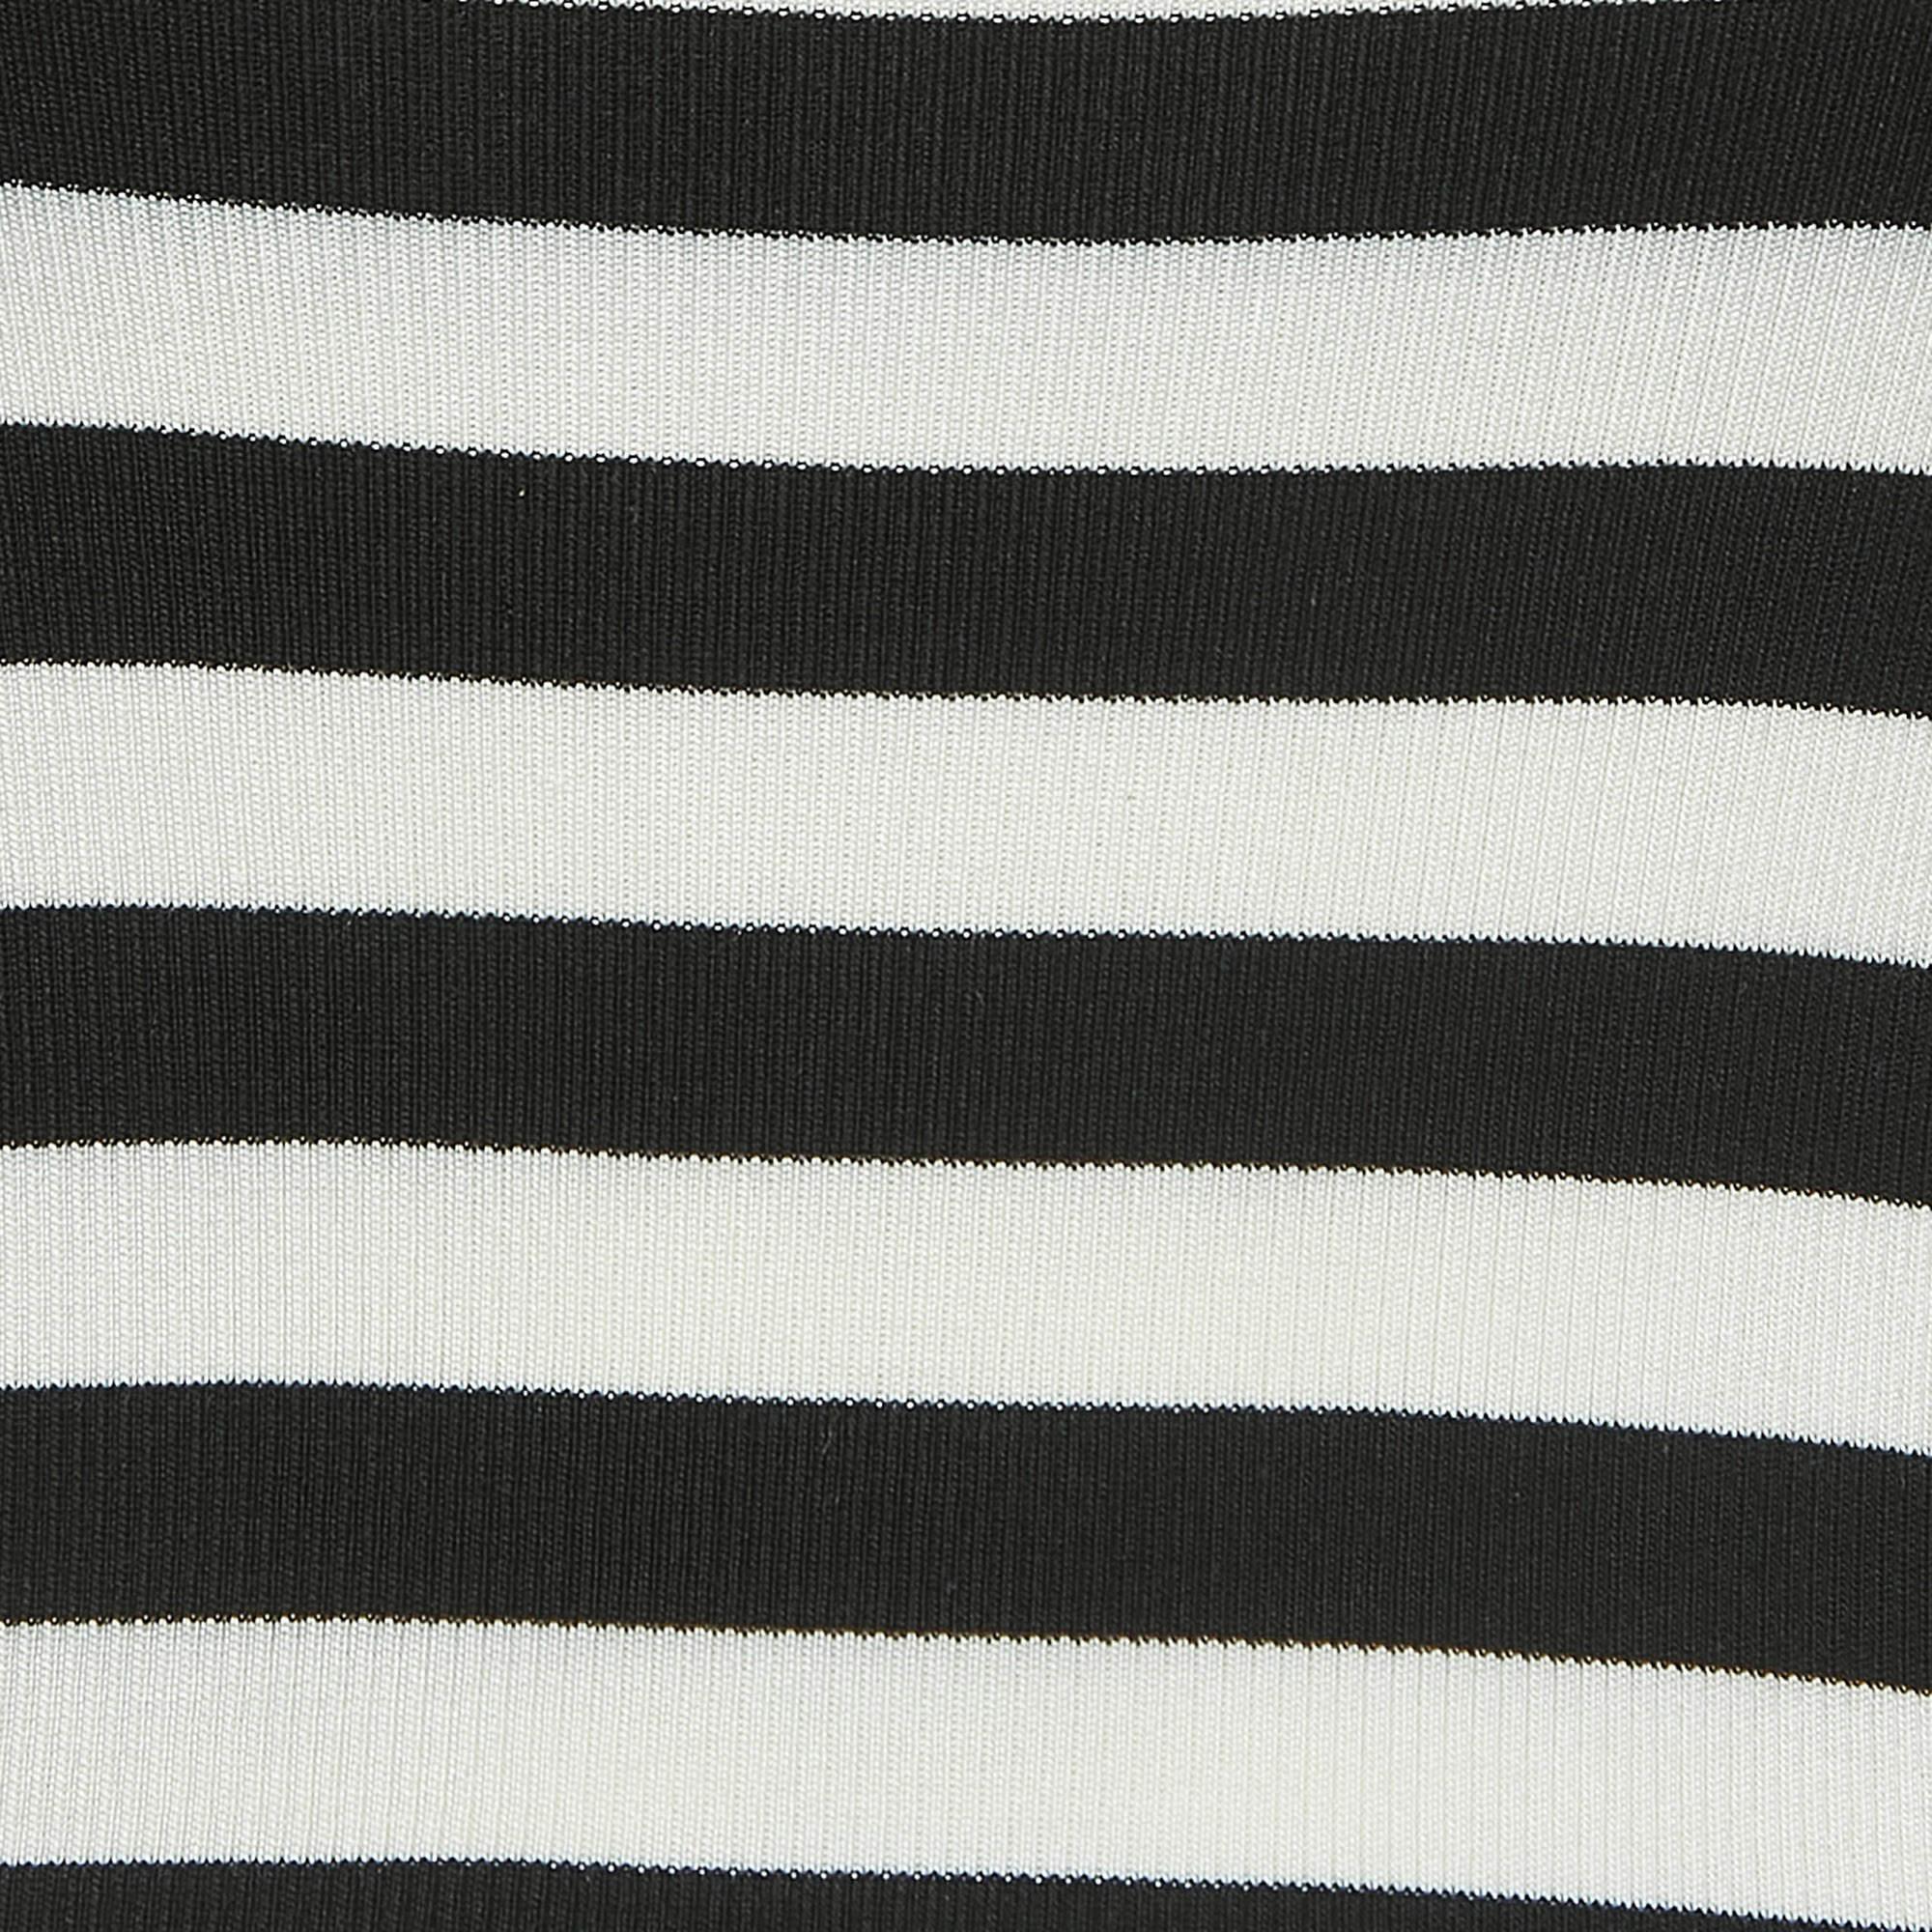 Women's Dolce & Gabbana Black/White Striped Silk Knit Tank Top S